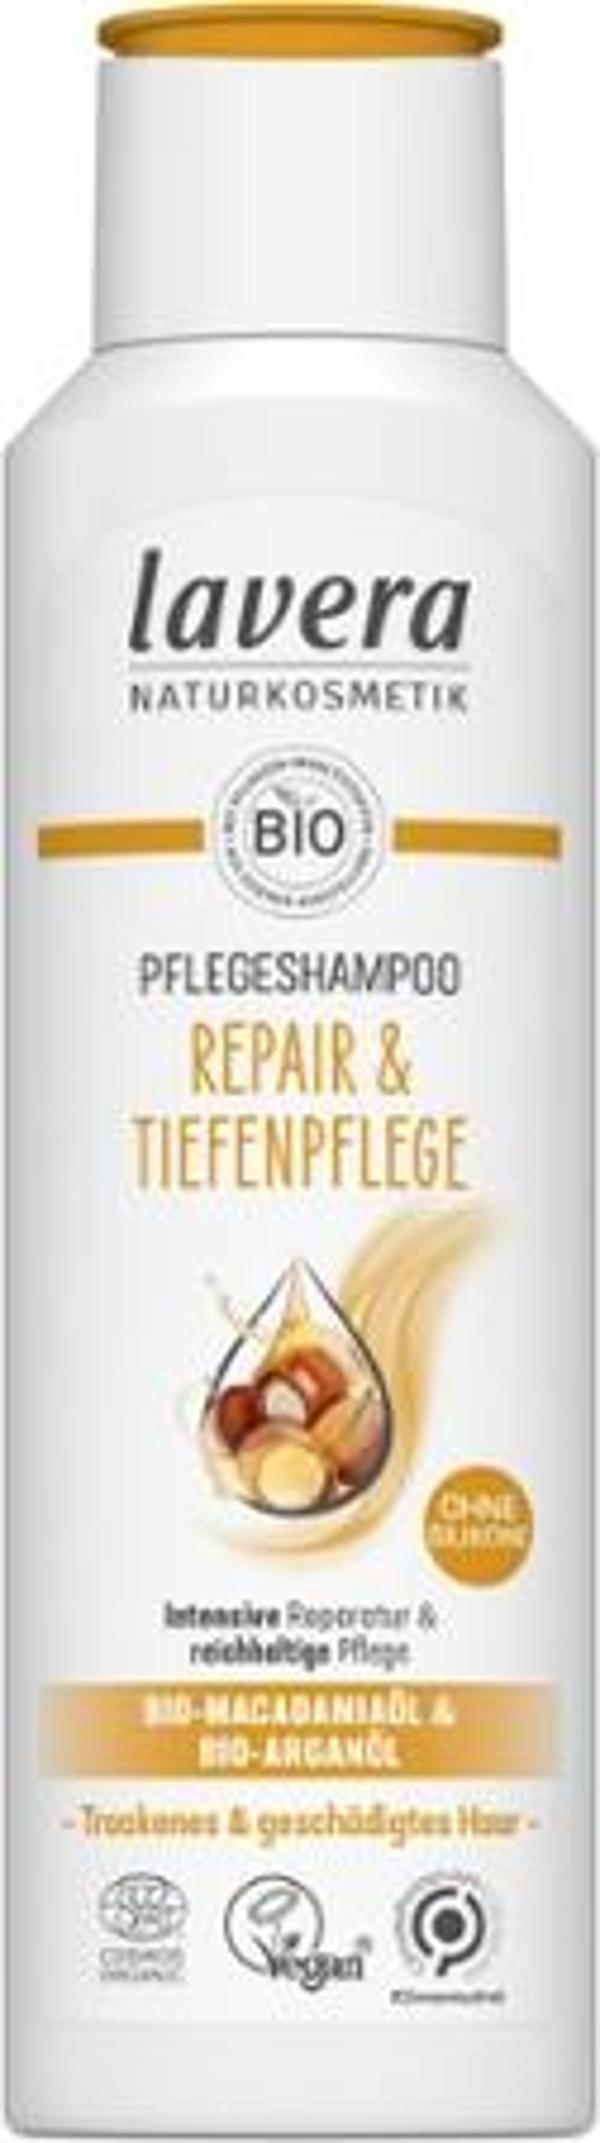 Produktfoto zu Pflegeshampoo Repair und Tiefenpflege